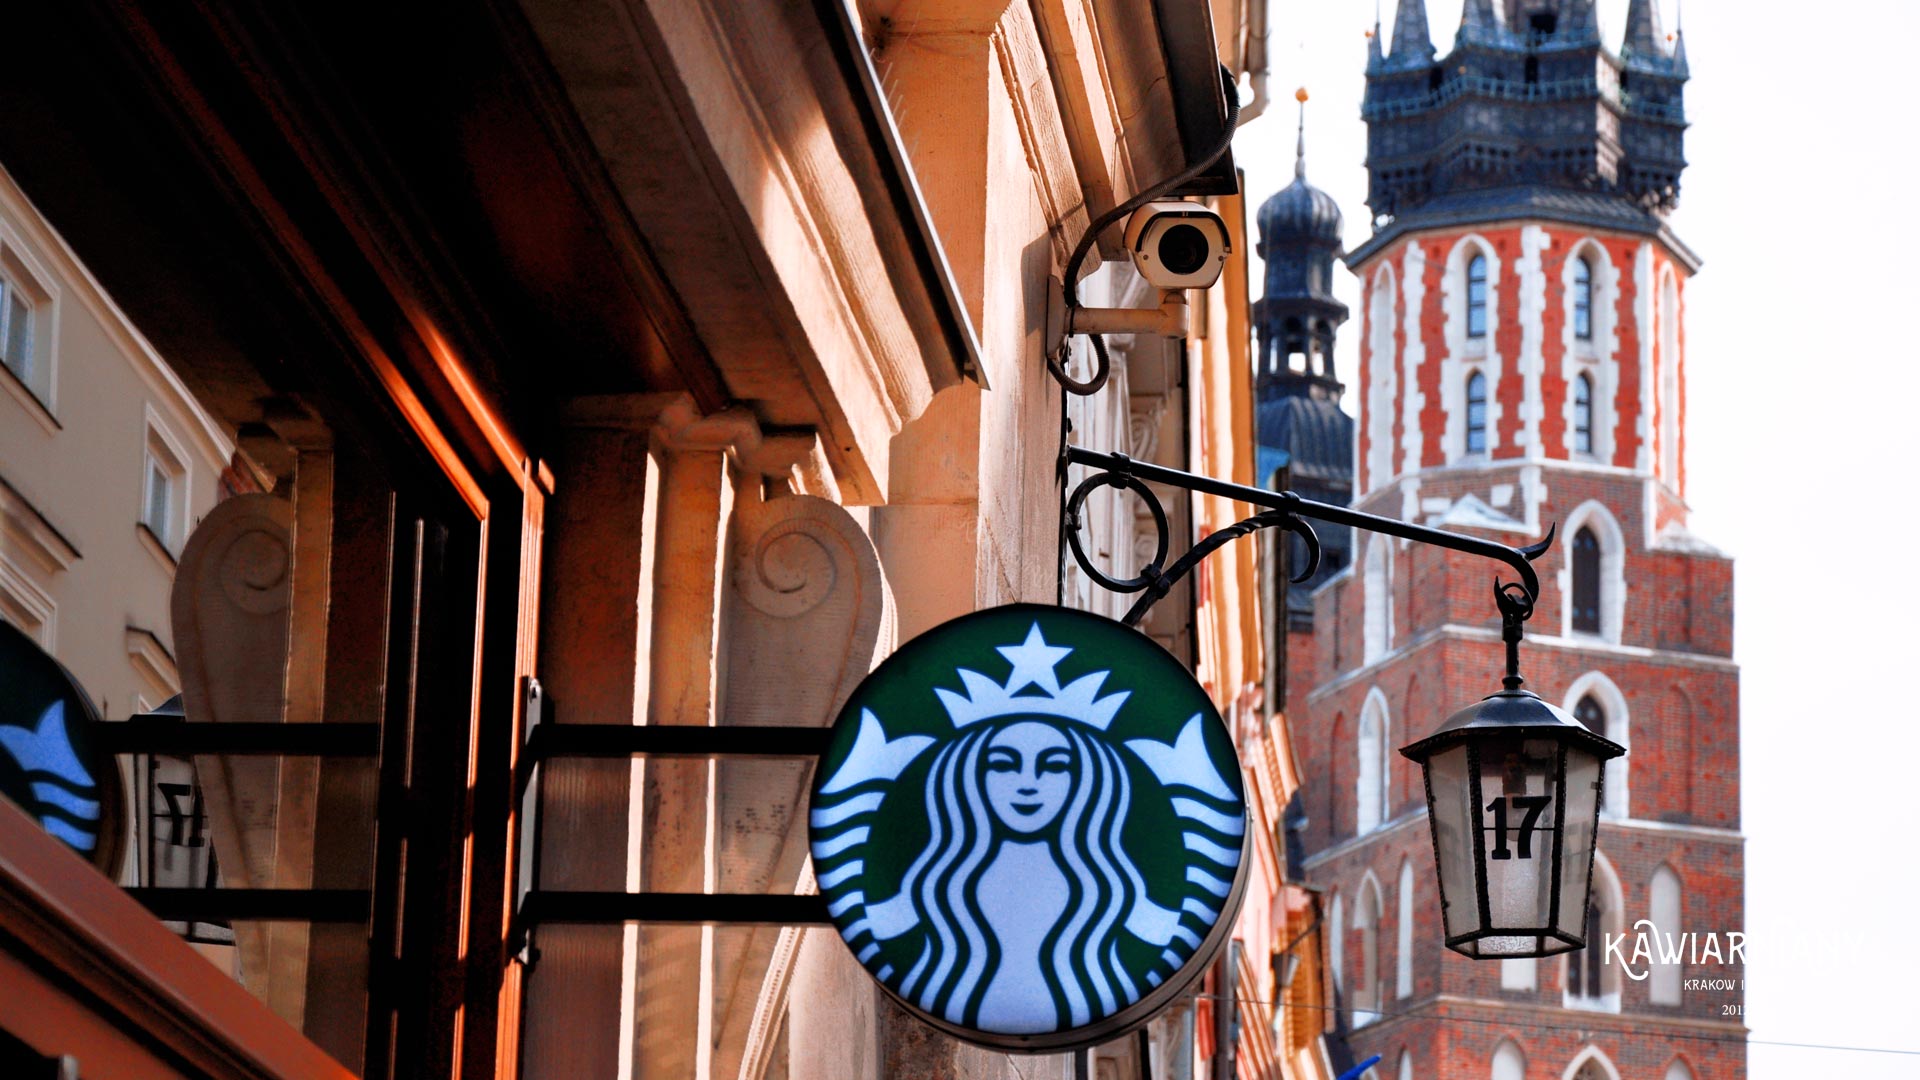 Czy w Krakowie jest Starbucks? Gdzie jest Starbucks w Krakowie